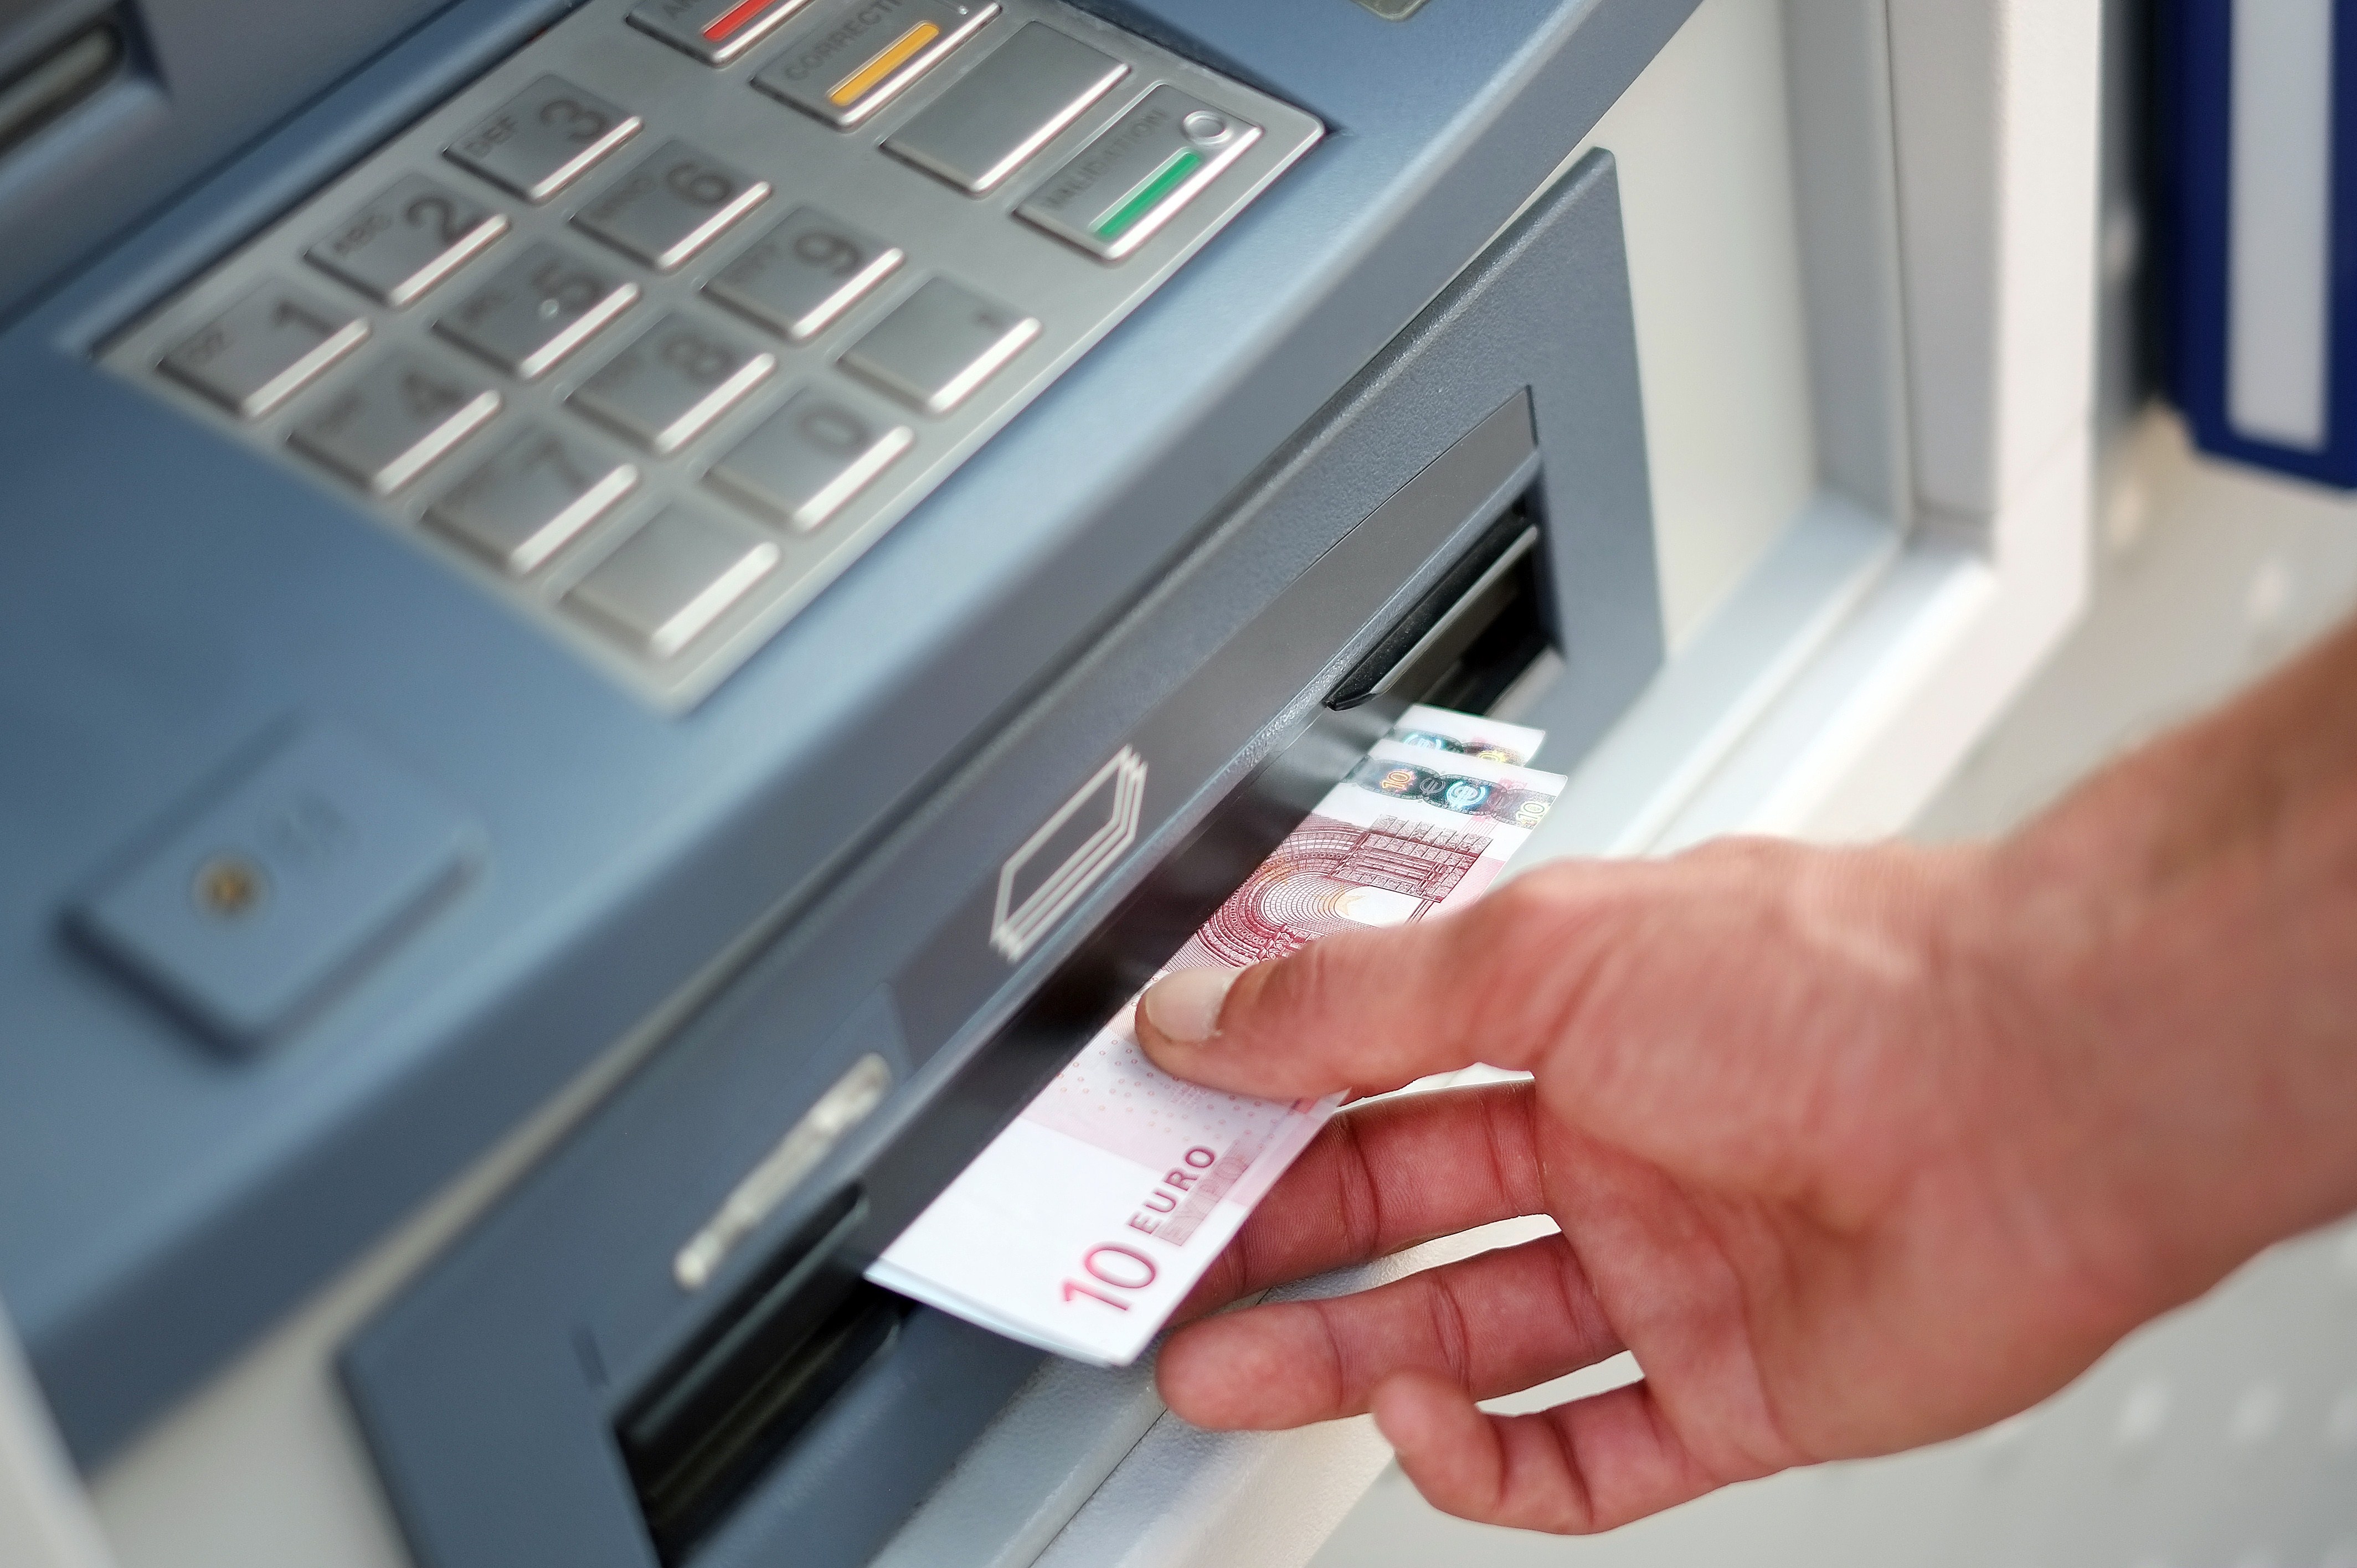 Bis zu 10 Euro pro Überweisung: Banken wollen kostenloses Girokonto ausrotten, mutmaßt Experte